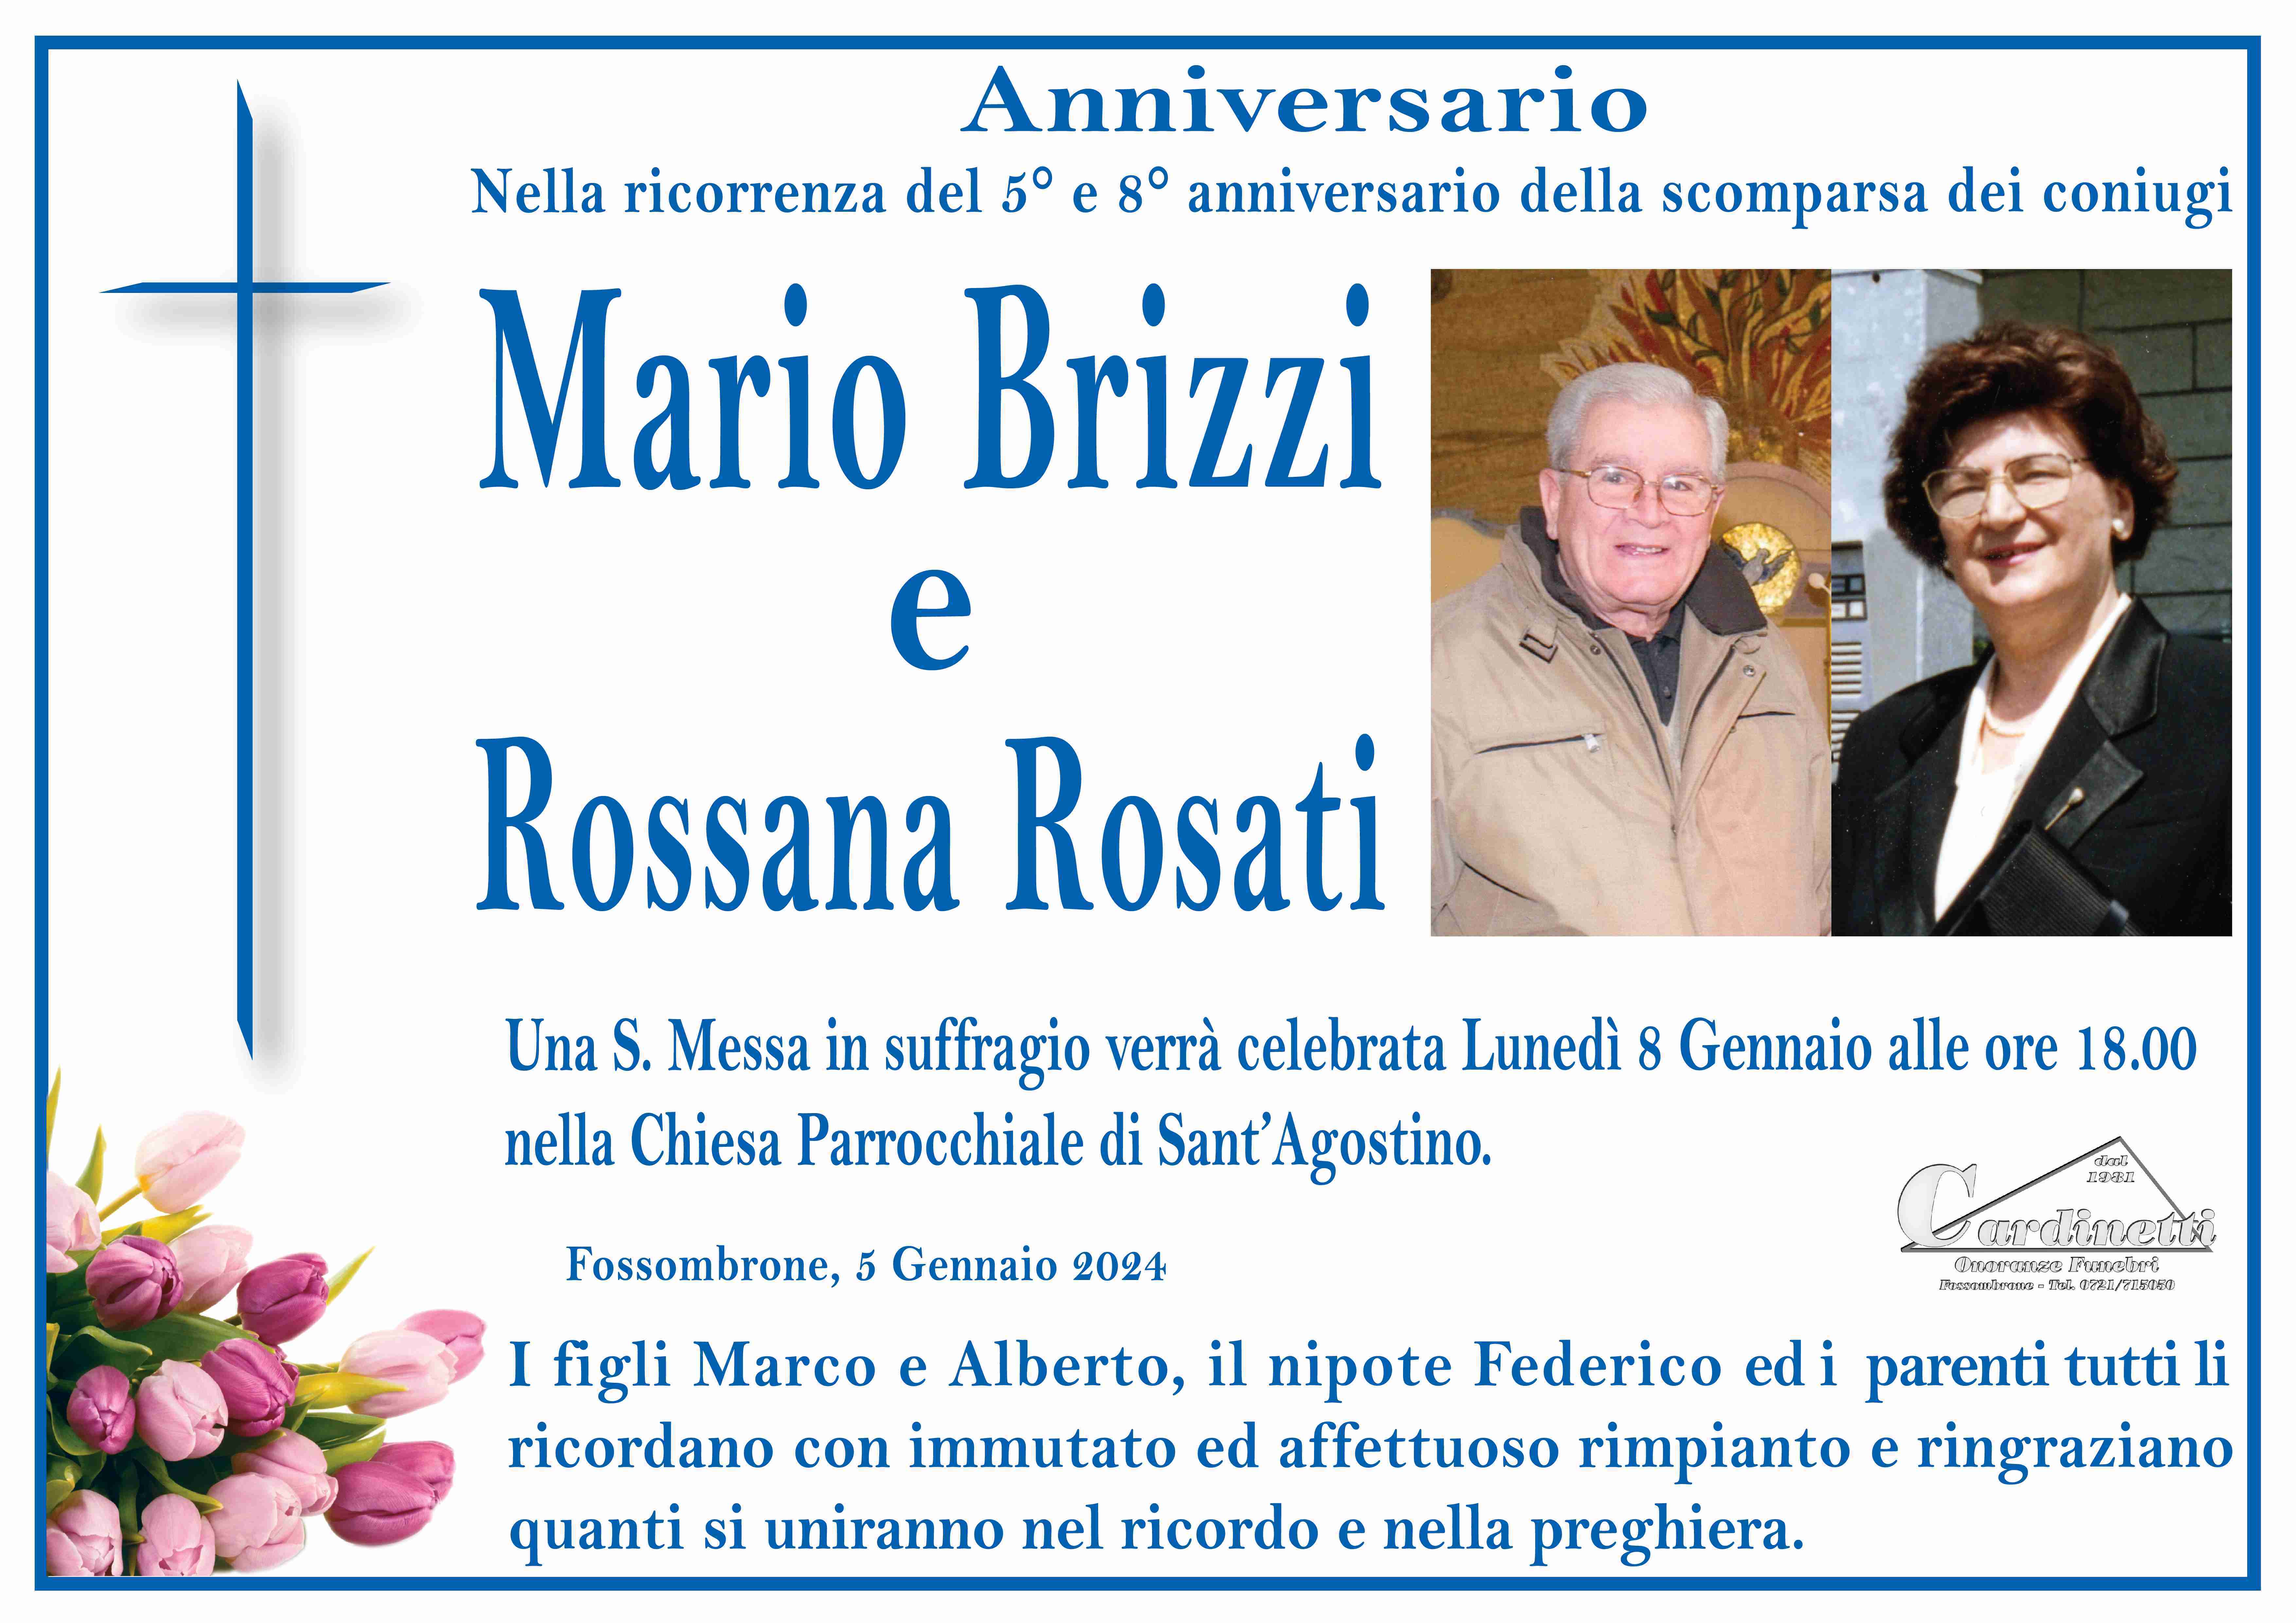 Mario Brizzi e Rossana Rosati